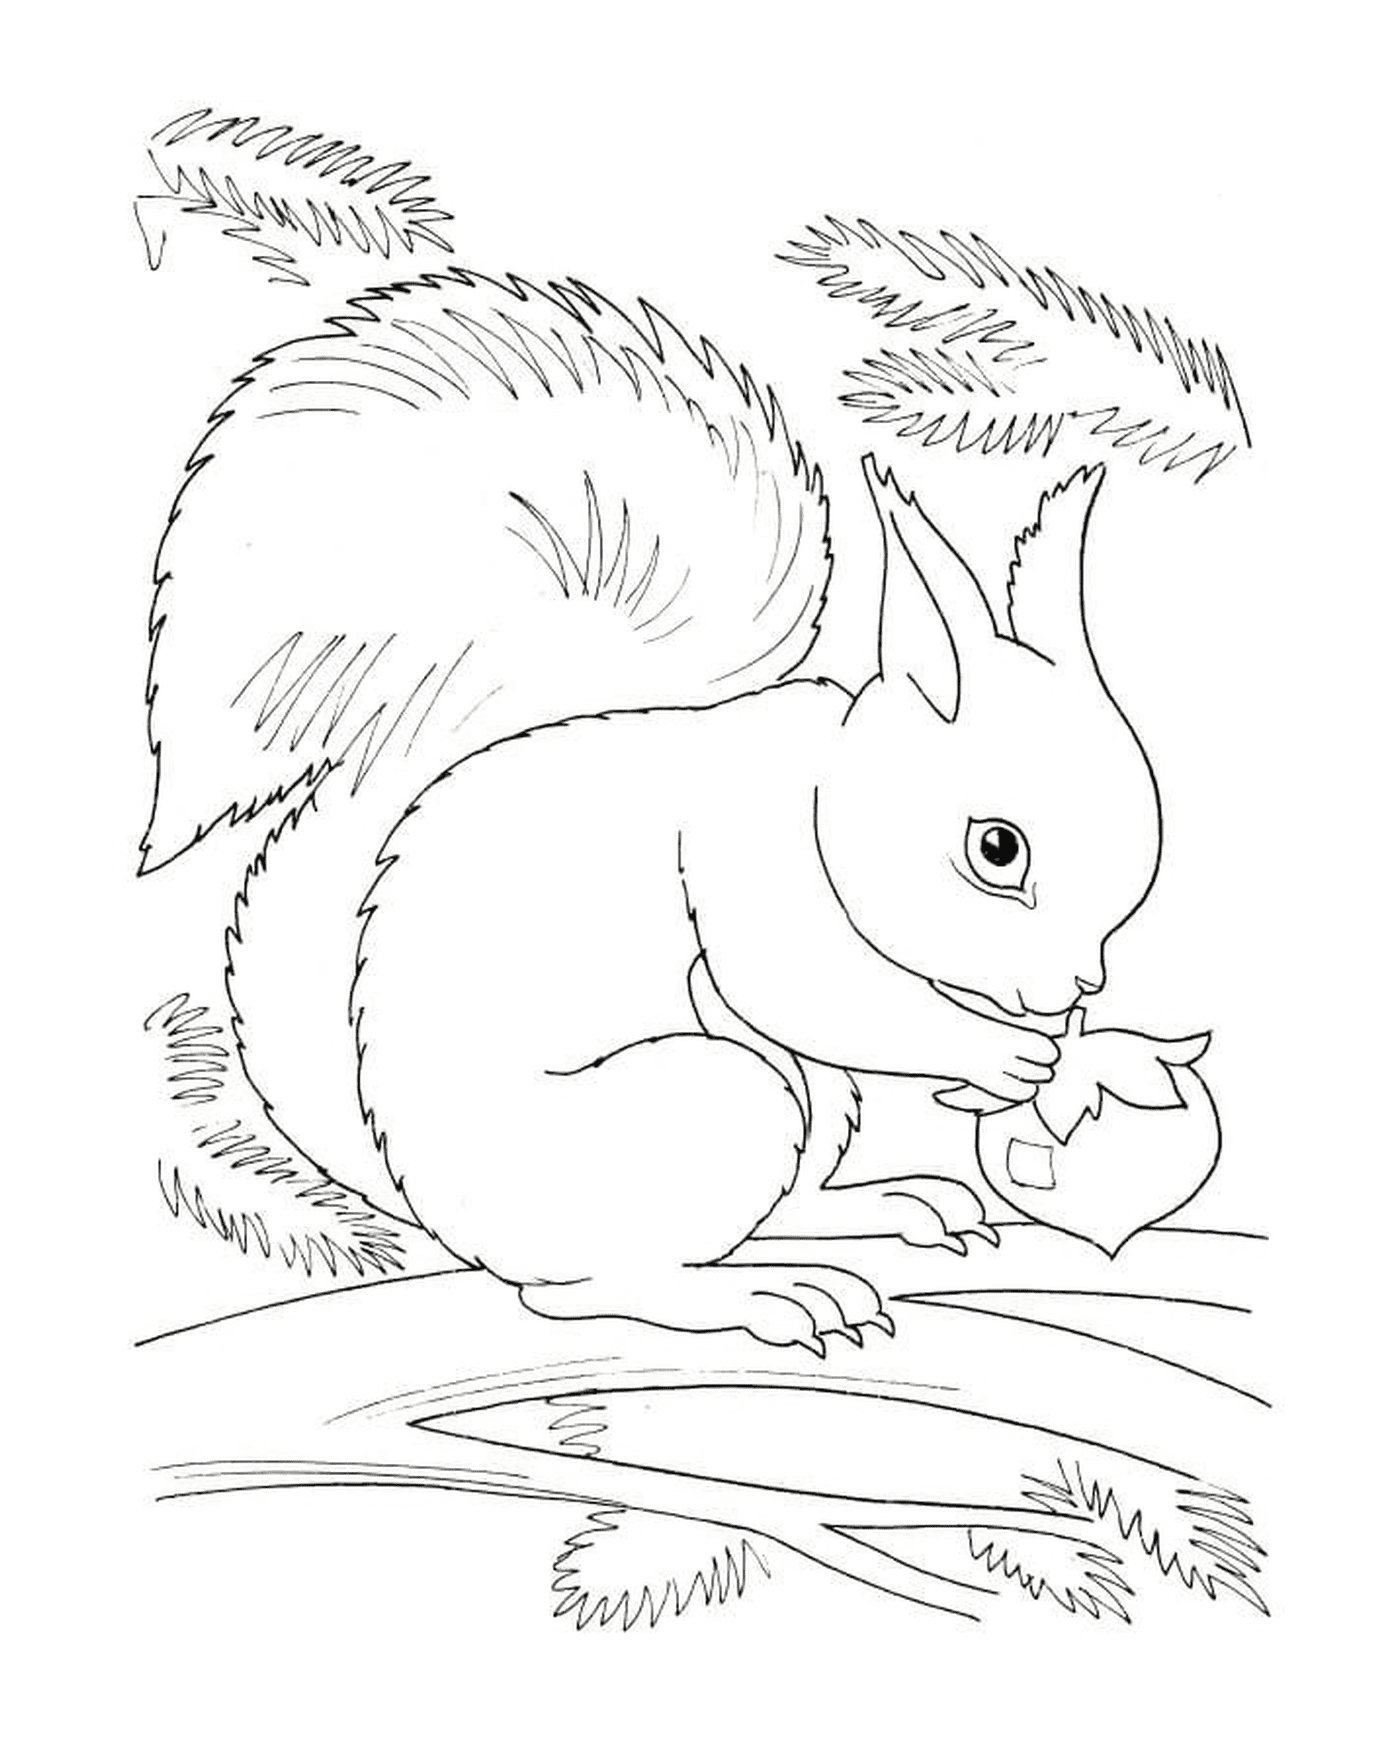   Un écureuil en train de manger une noisette 